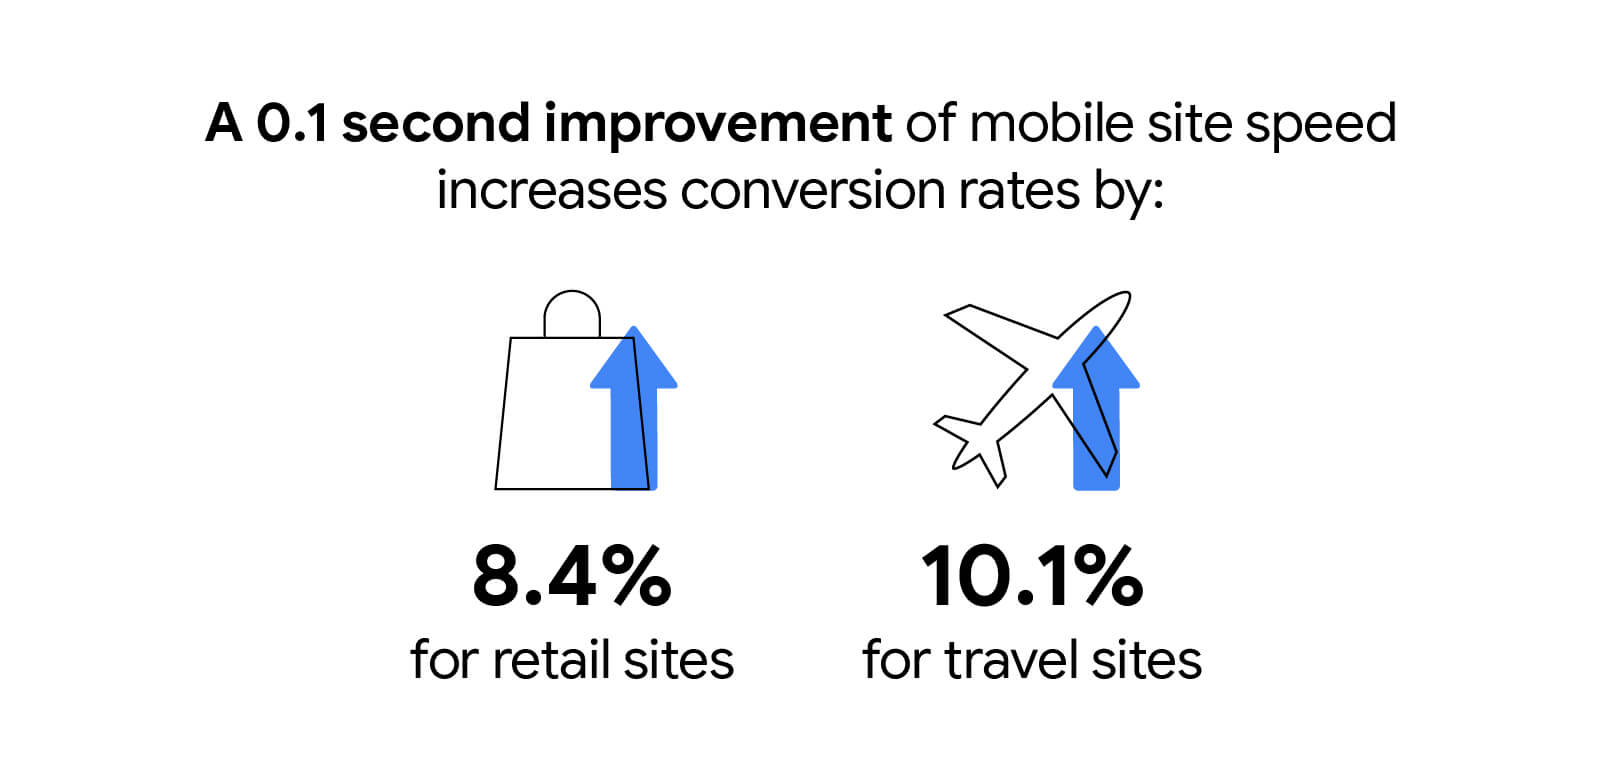 行動版網站速度加快 0.1 秒之後，零售網站的轉換率提高 8.4%，旅遊網站則提高 10.1%。